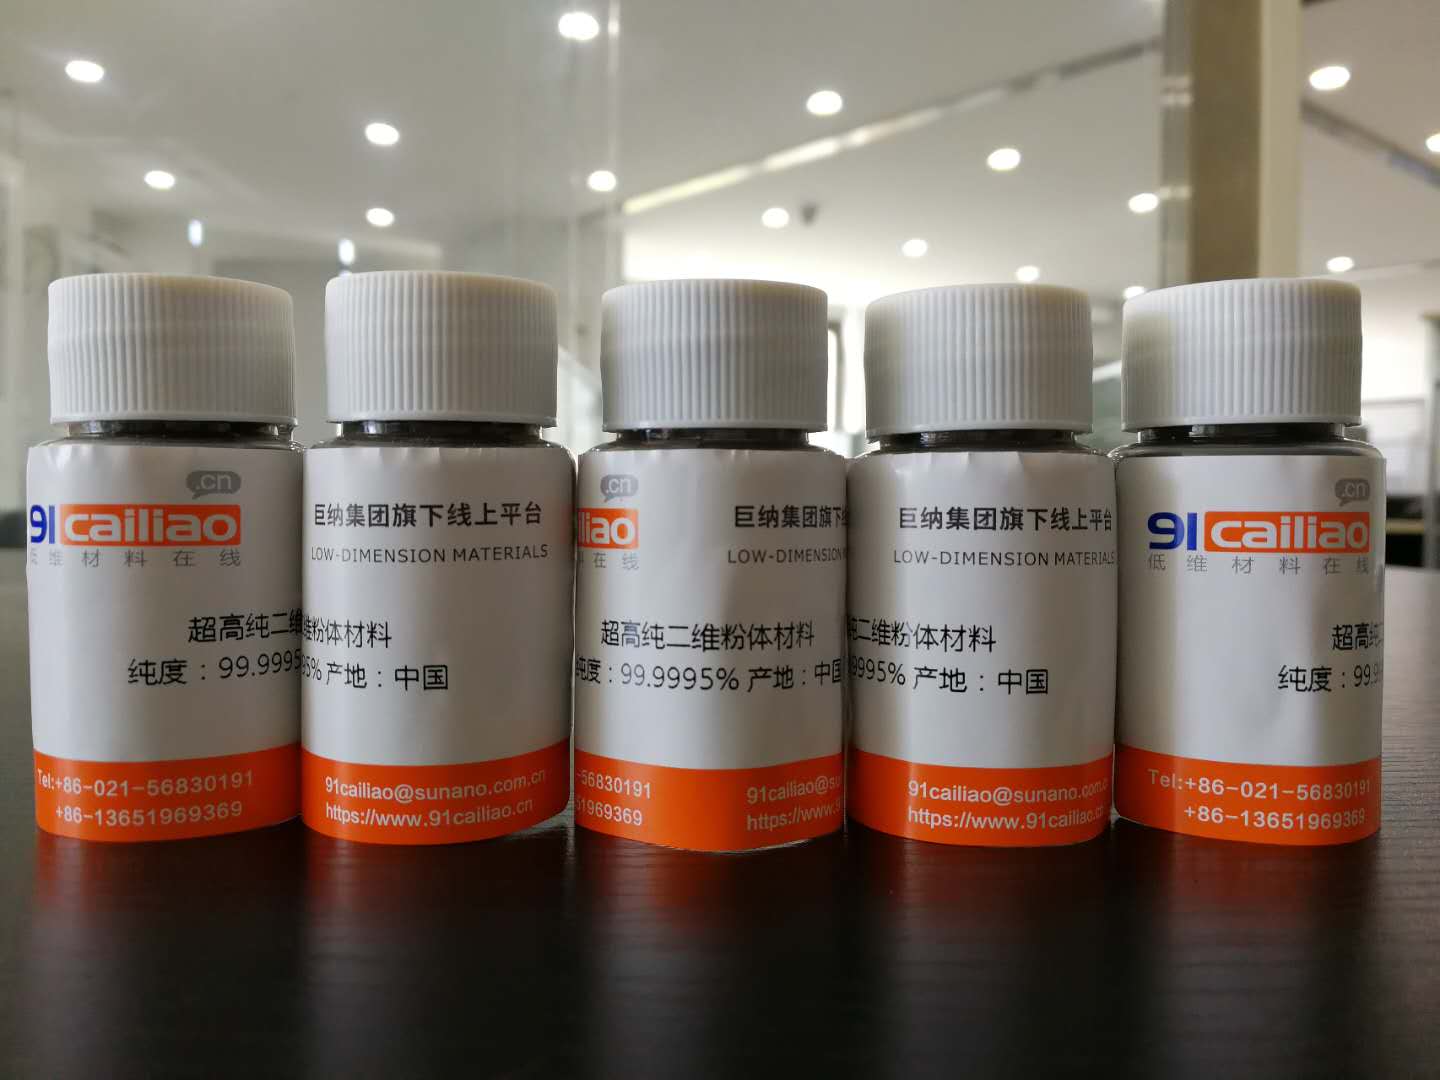 超高纯Bi2Te3粉末 超高纯碲化铋粉末(1g)